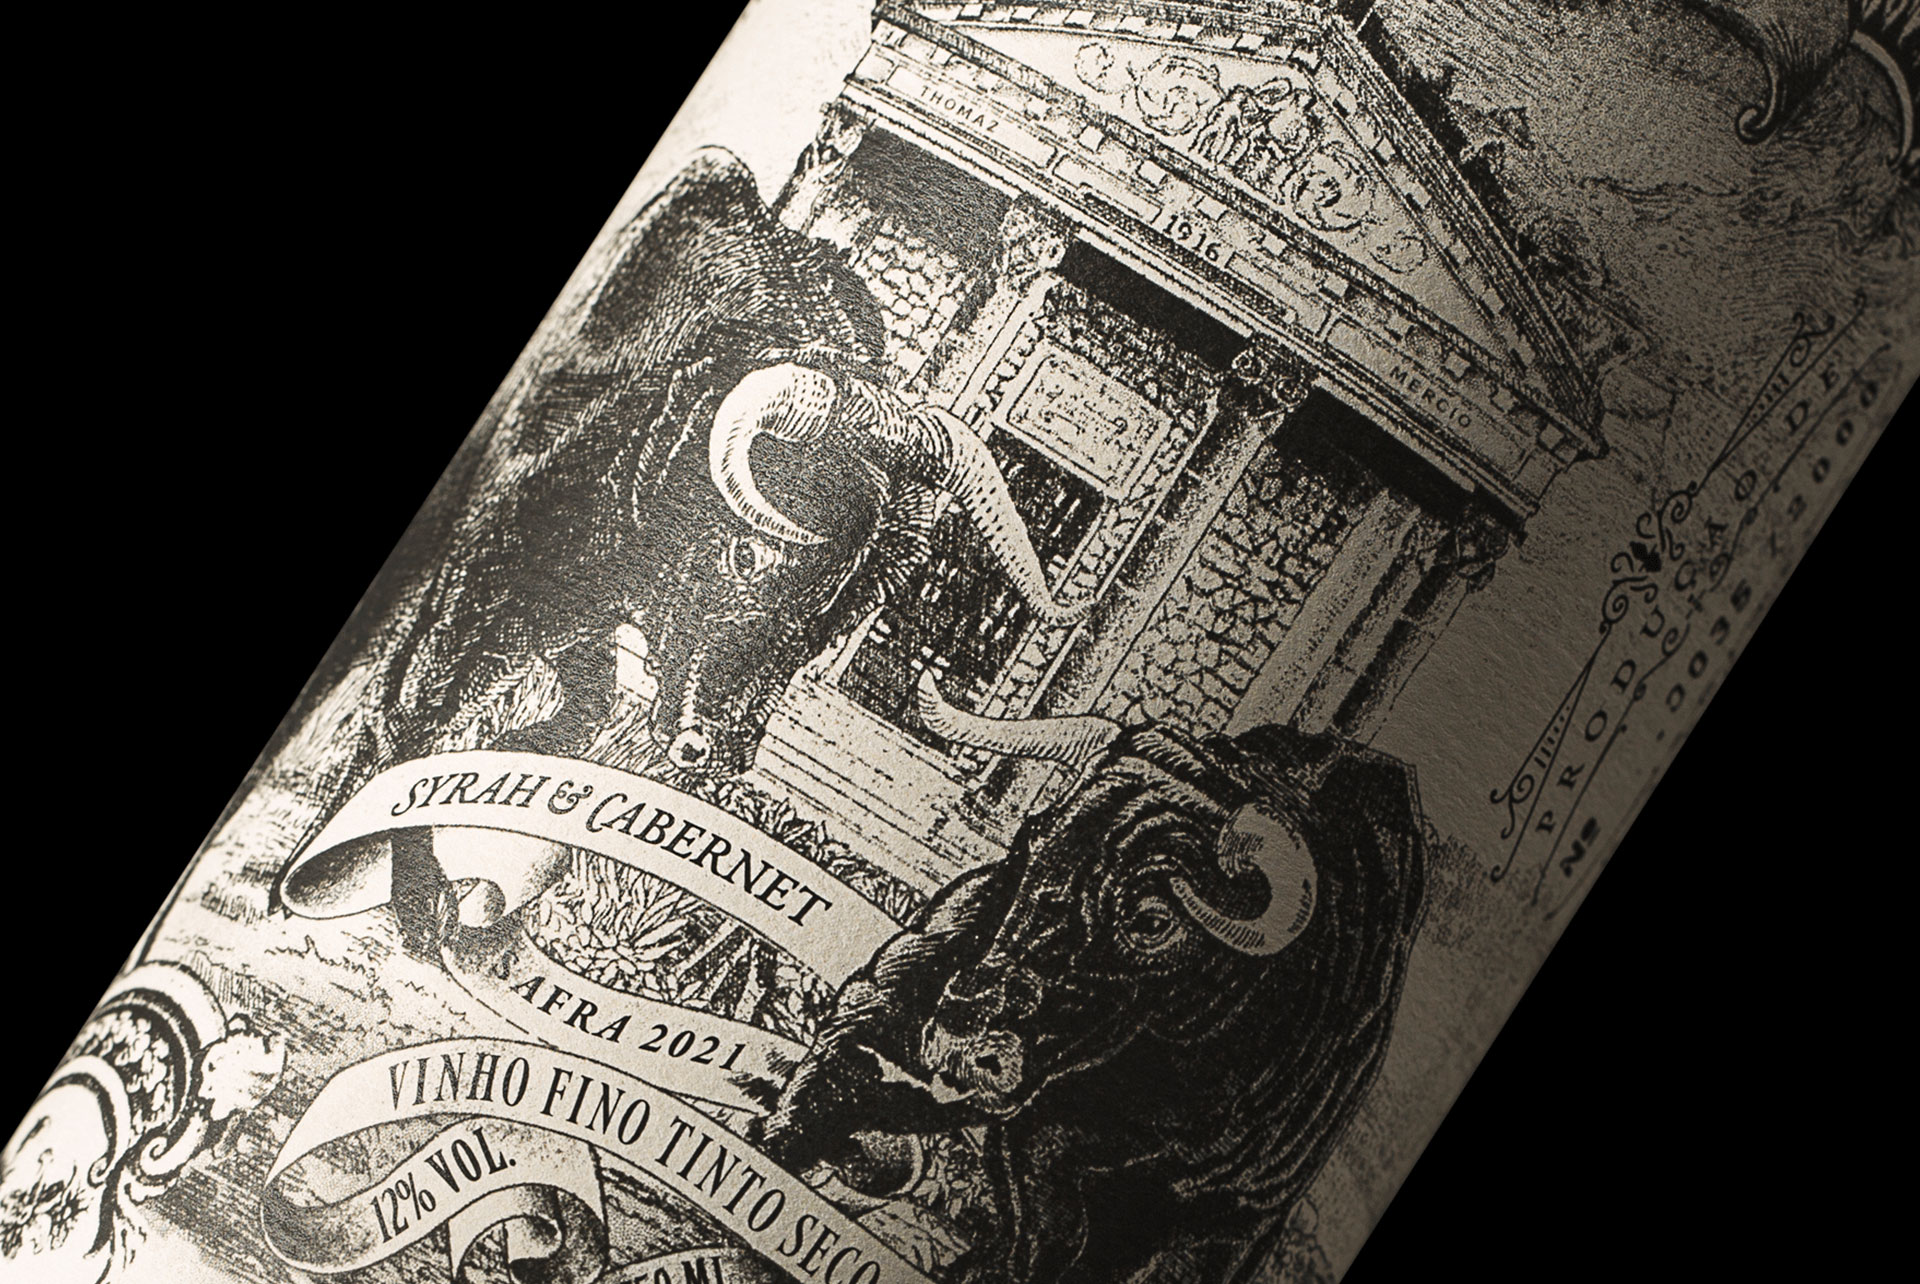 Cova de Toro Wine Label Design